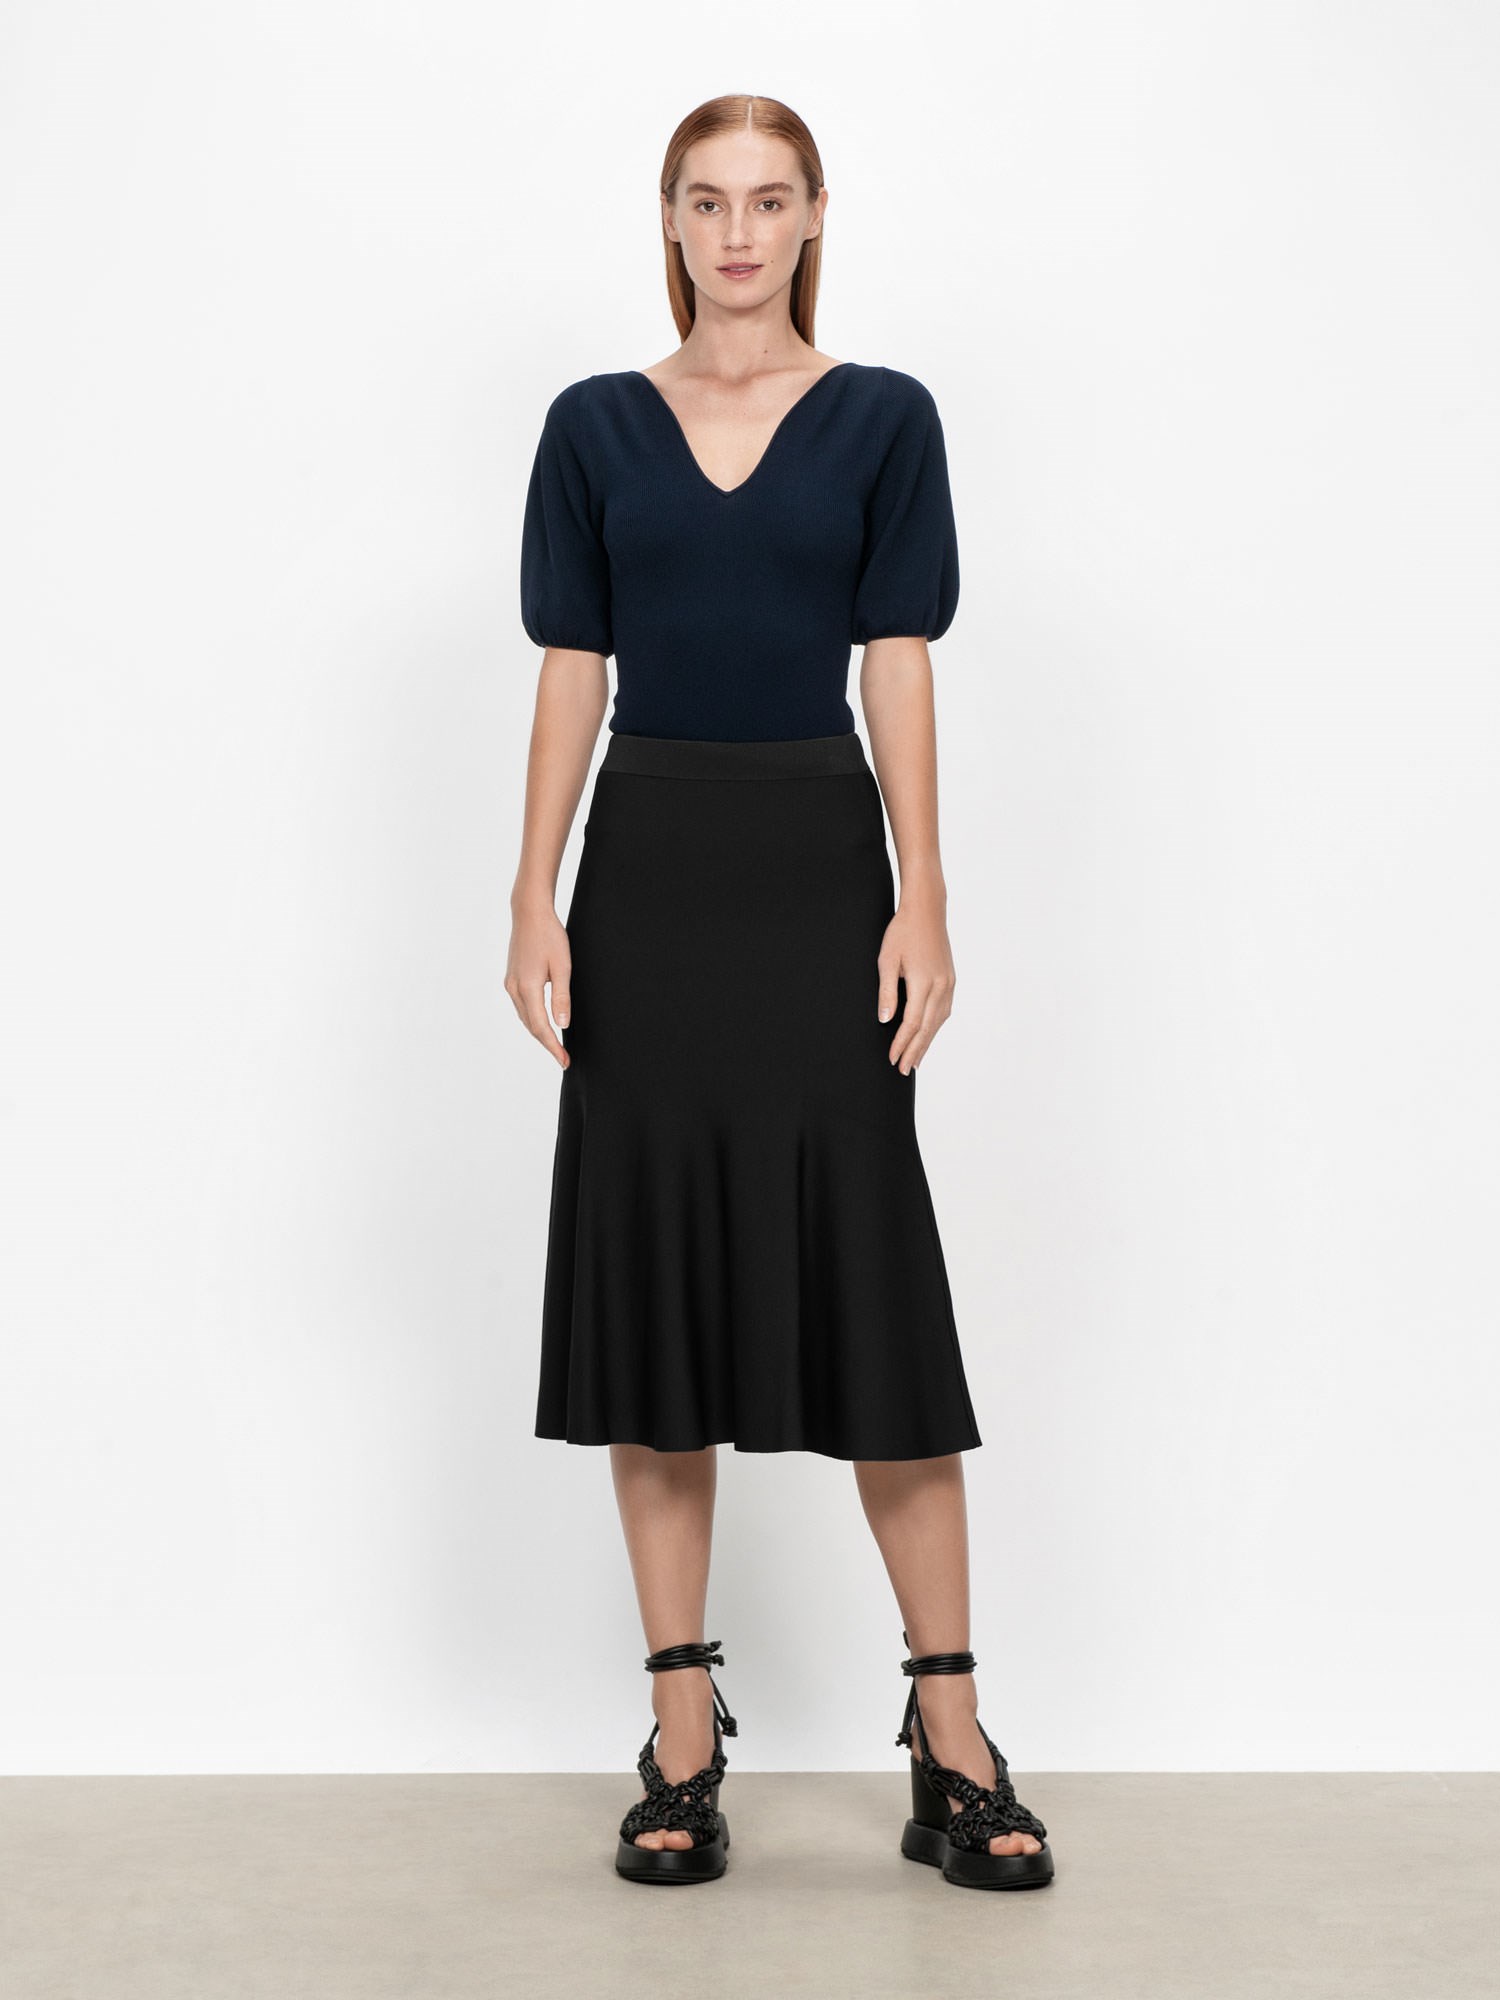 Milano Flip Skirt | Buy Skirts Online - Veronika Maine